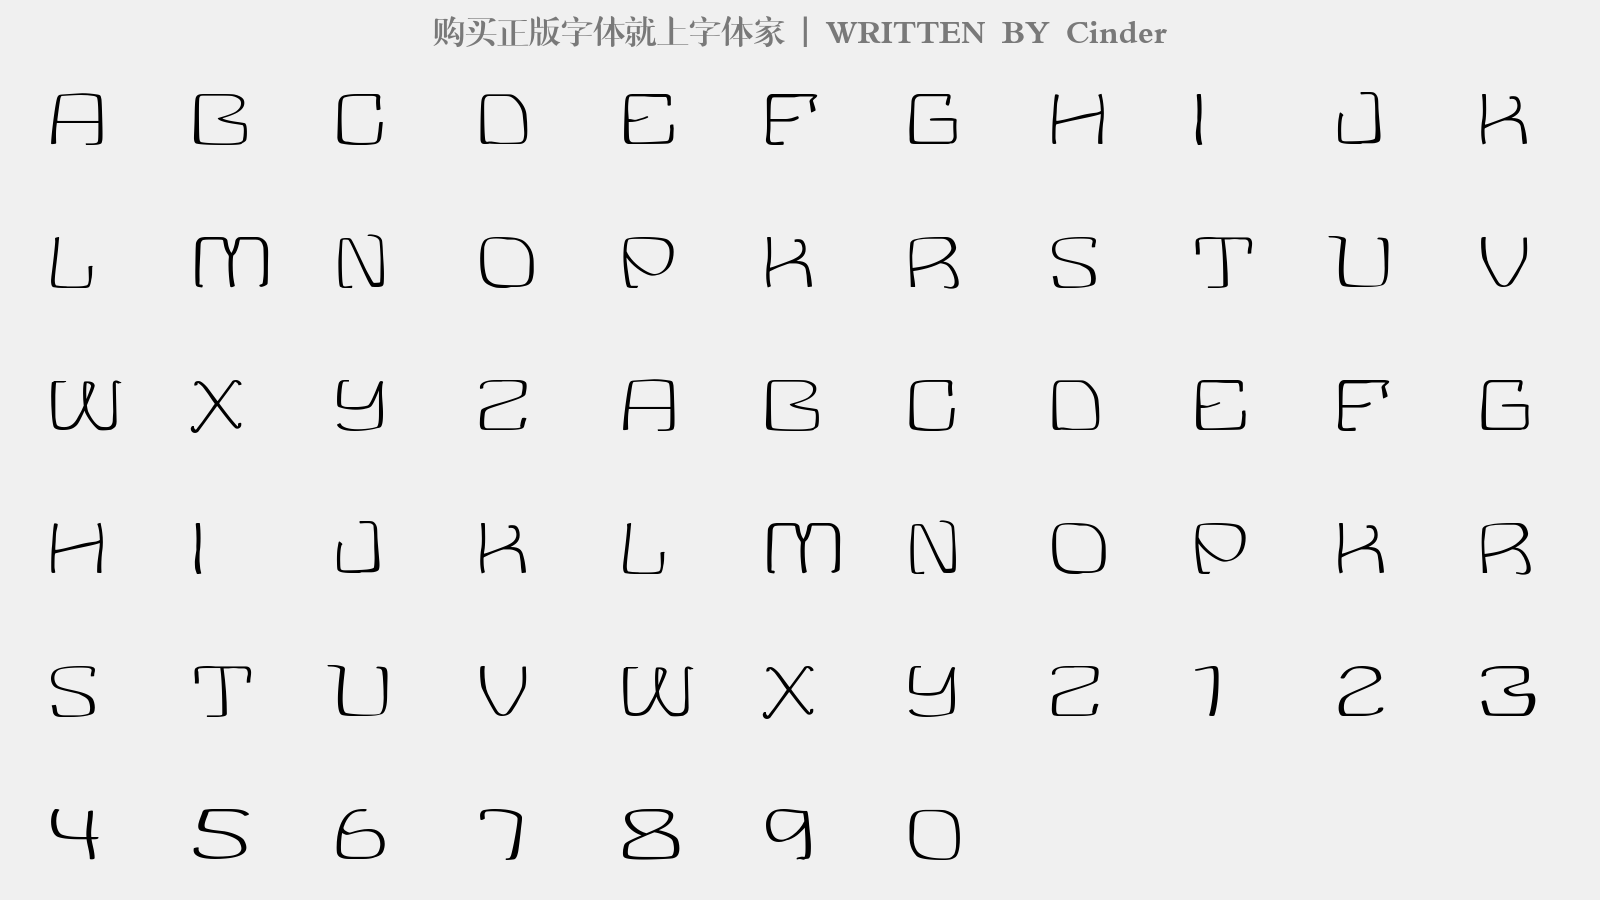 Cinder - 大写字母/小写字母/数字